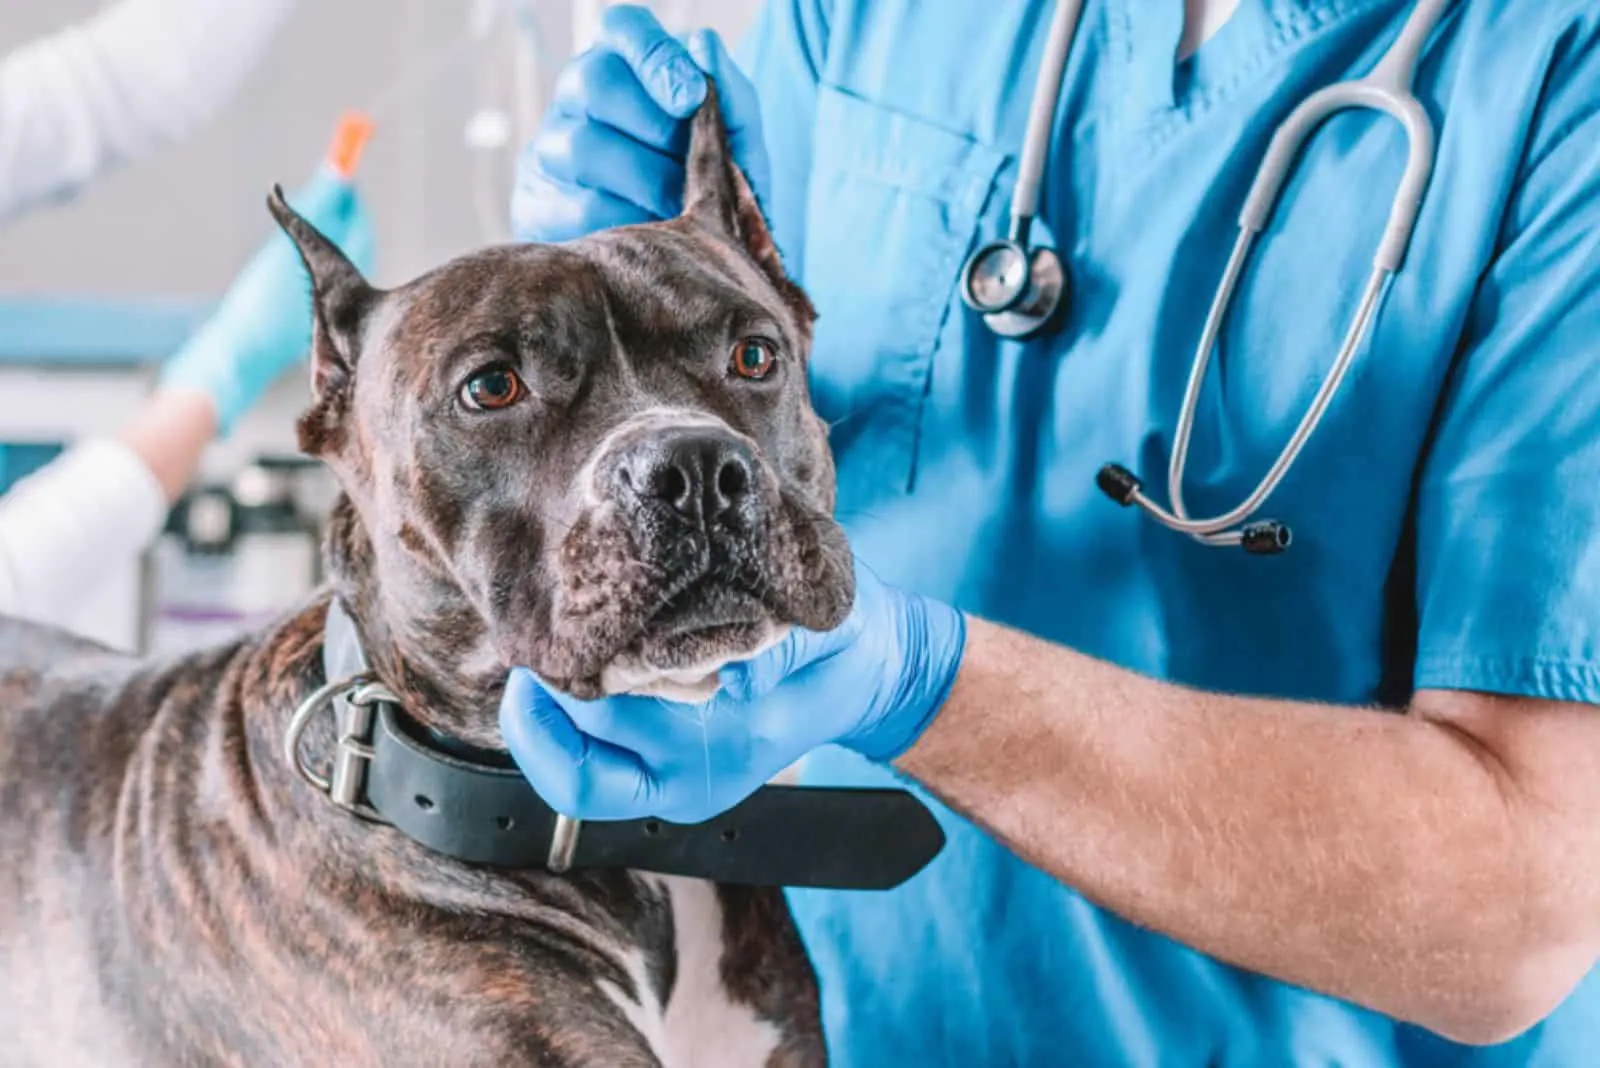 bulldog being examined at clinic